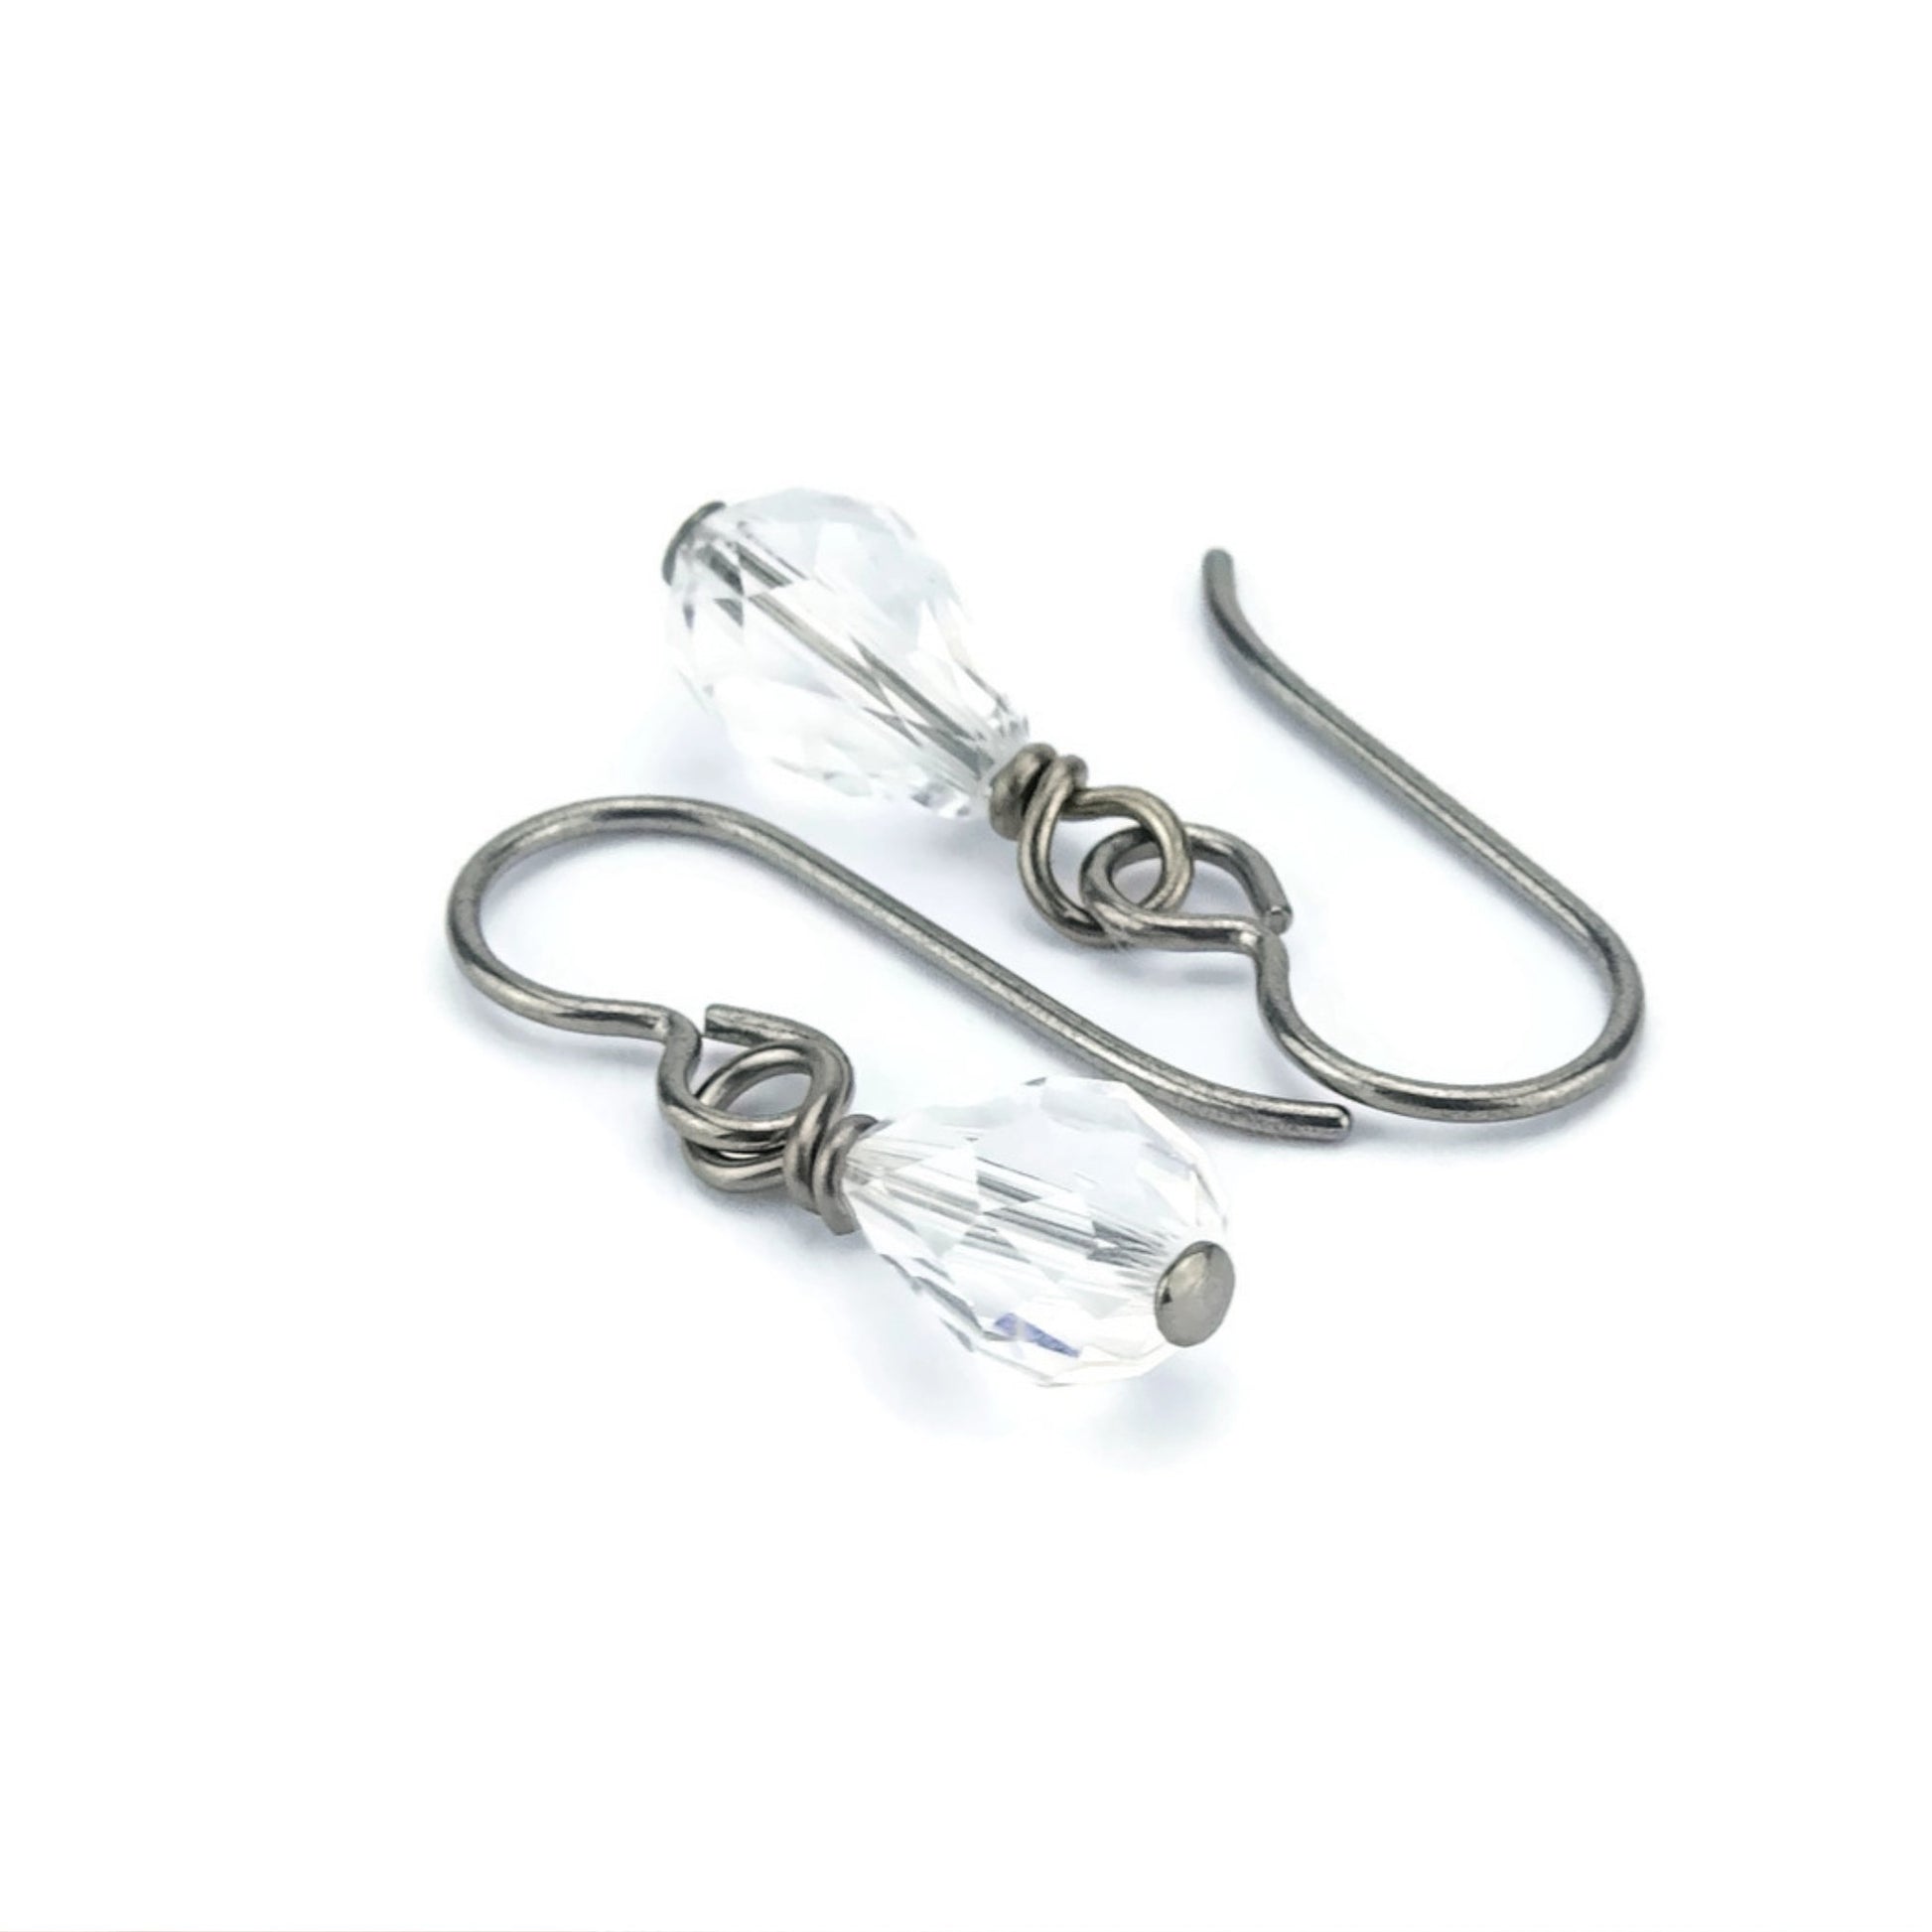 Clear Crystal Drop Titanium Earrings, Niobium Earrings for Sensitive Ears, Nickel Free Hypoallergenic Swarovski Crystal Teardrop Earrings